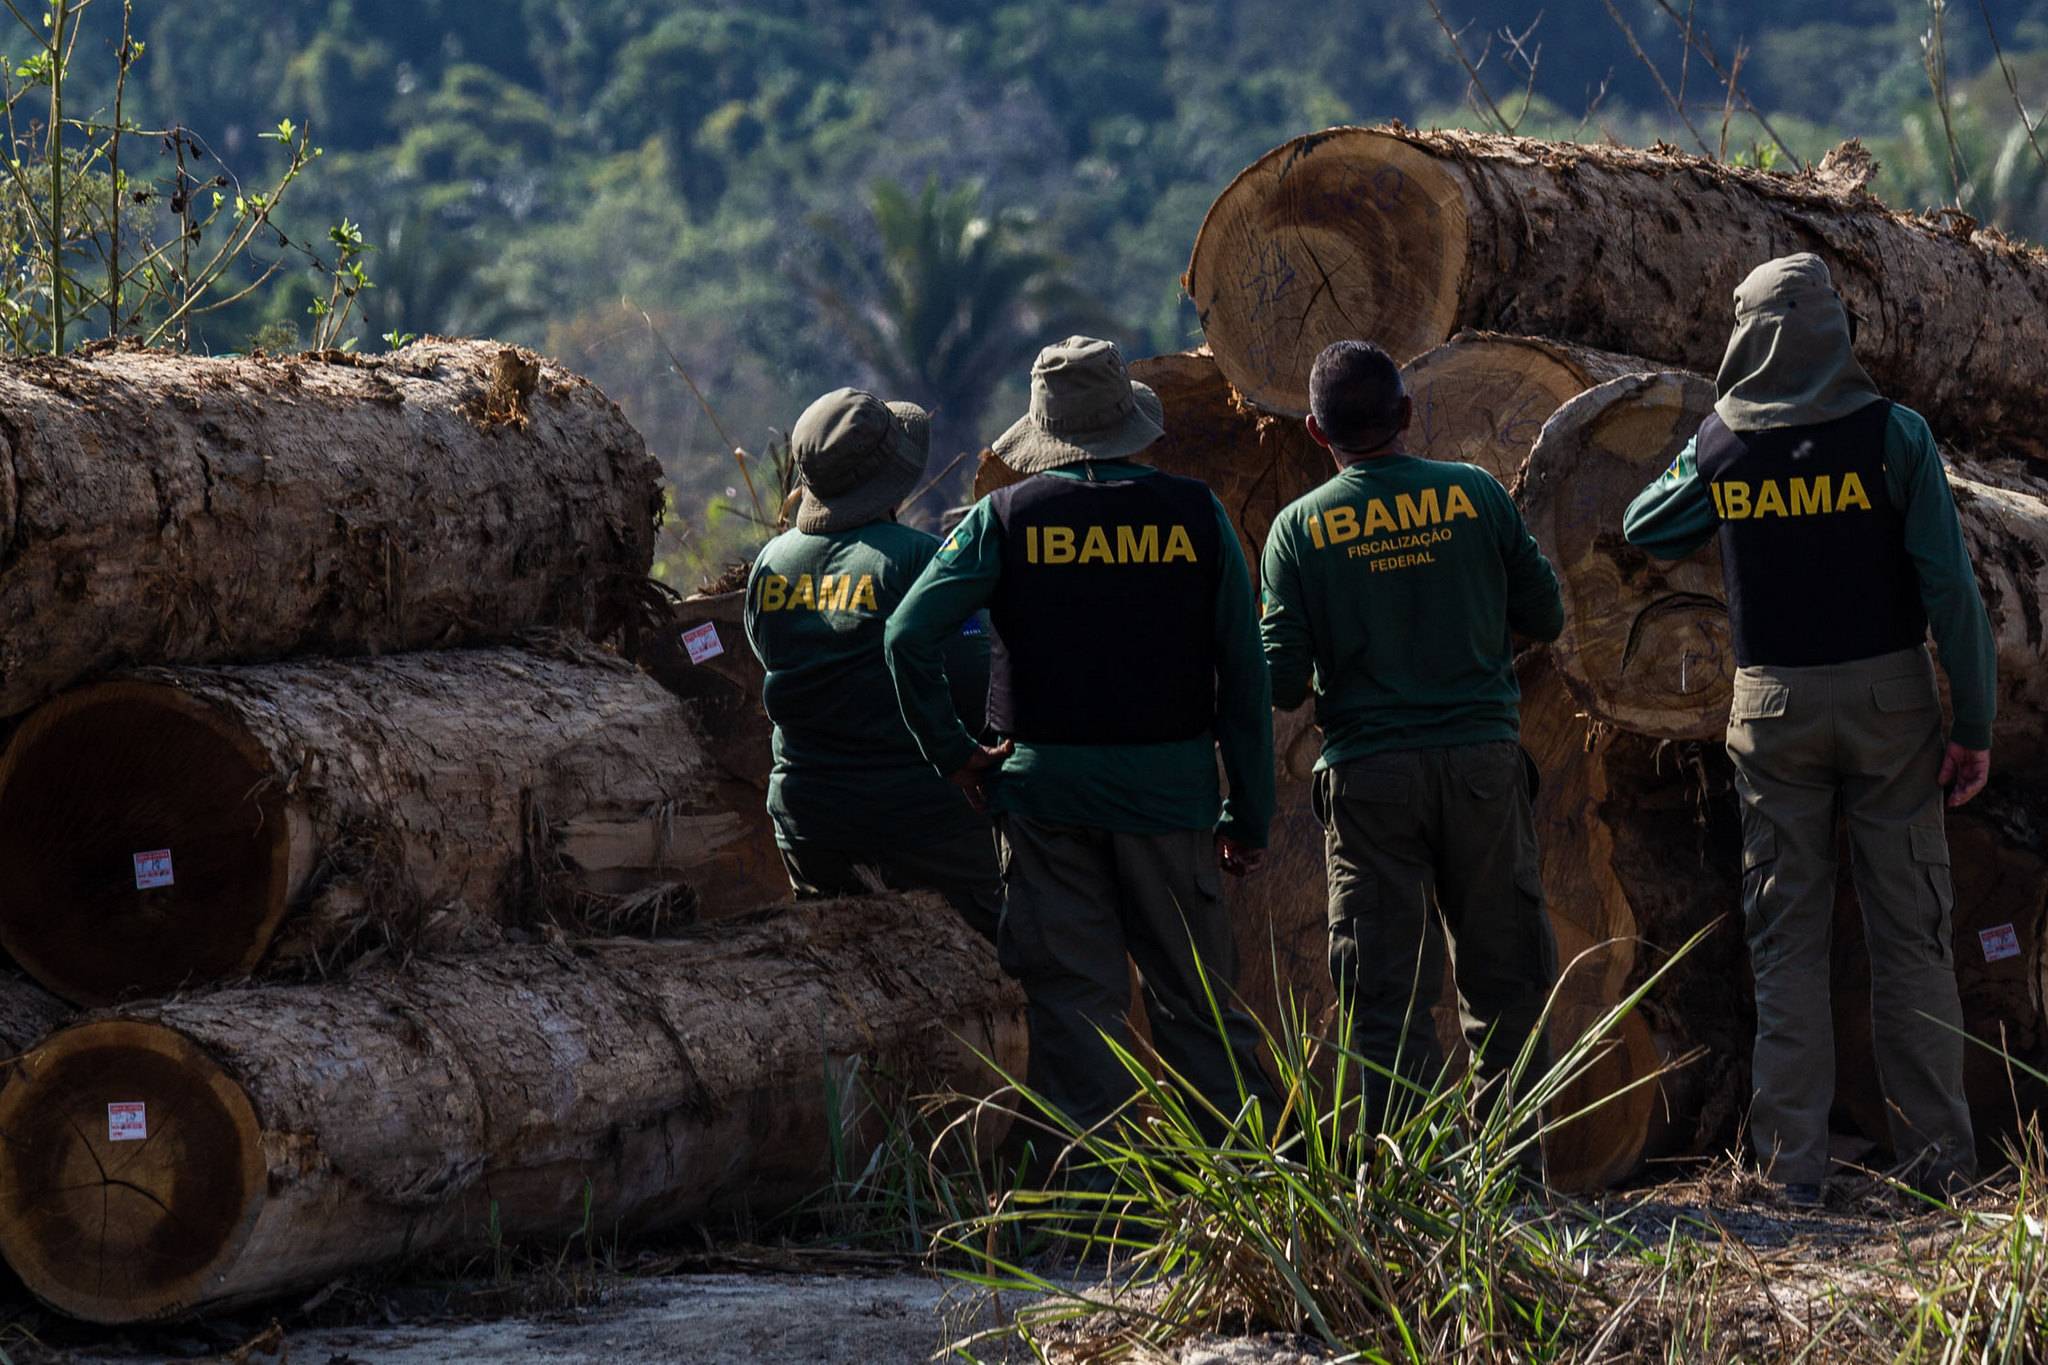 Fiscais do Ibama em operação contra desmatamento ilegal em Espigão do Oeste (RO), em julho de 2019. Órgão teve o setor desmobilizado durante o governo Bolsonaro. Foto: Fernando Augusto/Ibama.

